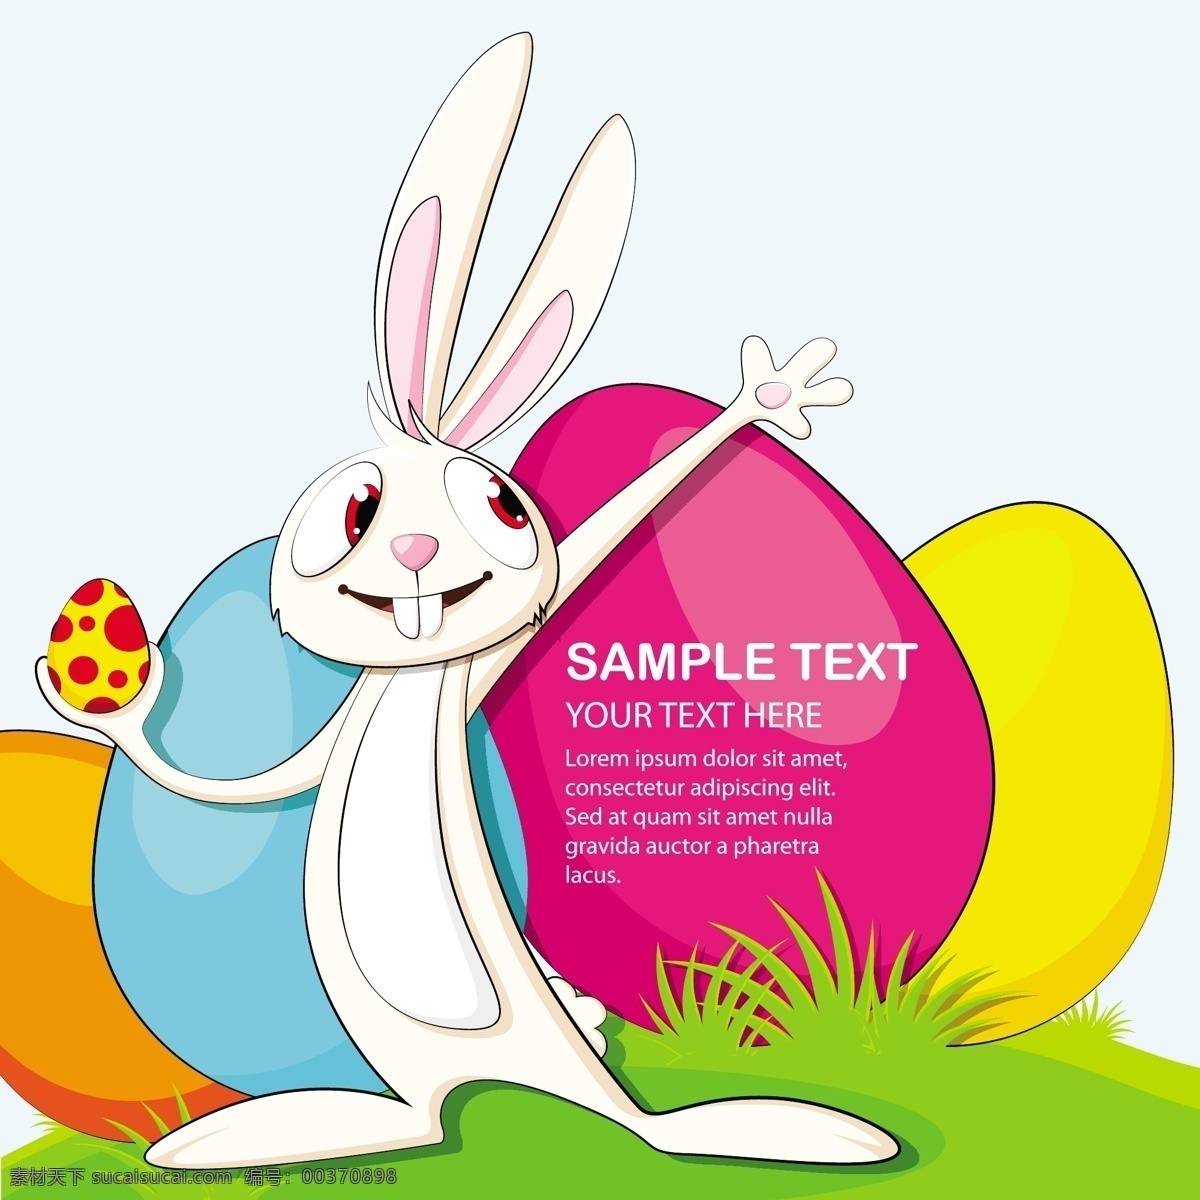 复活节素材 节日素材 卡通兔子 彩蛋 生活百科 矢量素材 白色